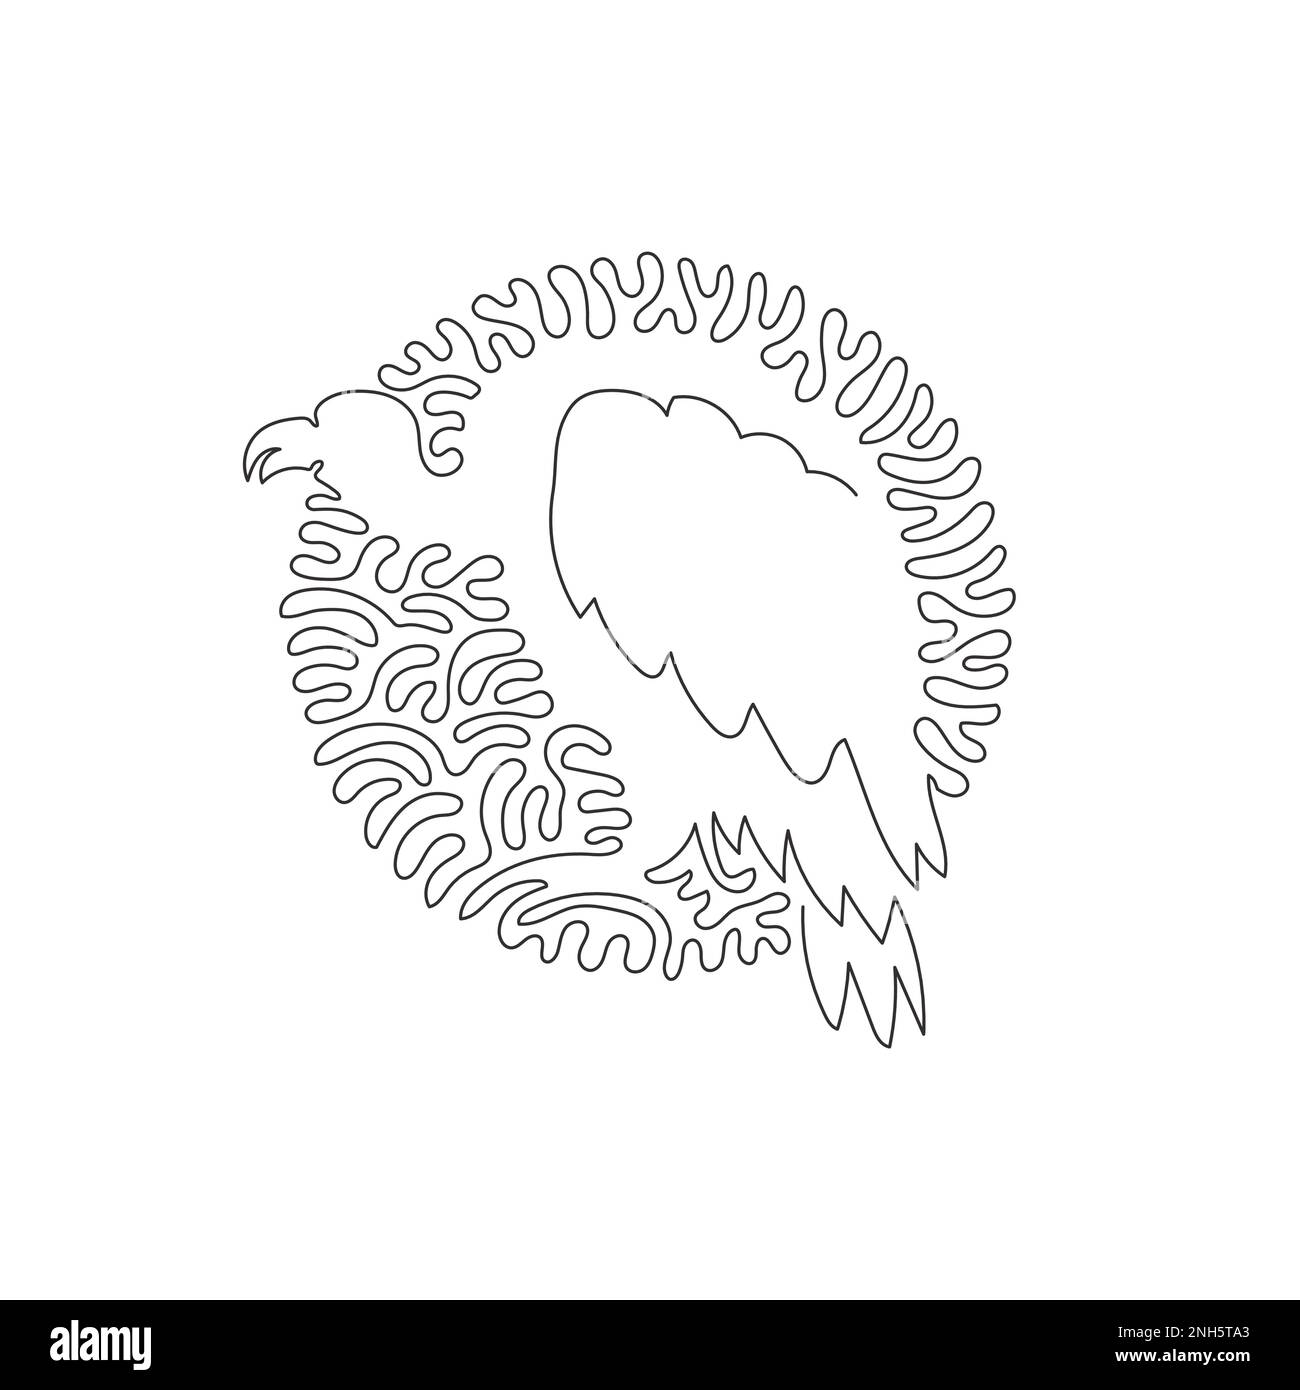 Disegno continuo di una linea curva di brutta arte astratta avvoltoio Illustrazione del vettore del tratto modificabile a linea singola di un avvoltoio con teste caldanti Illustrazione Vettoriale